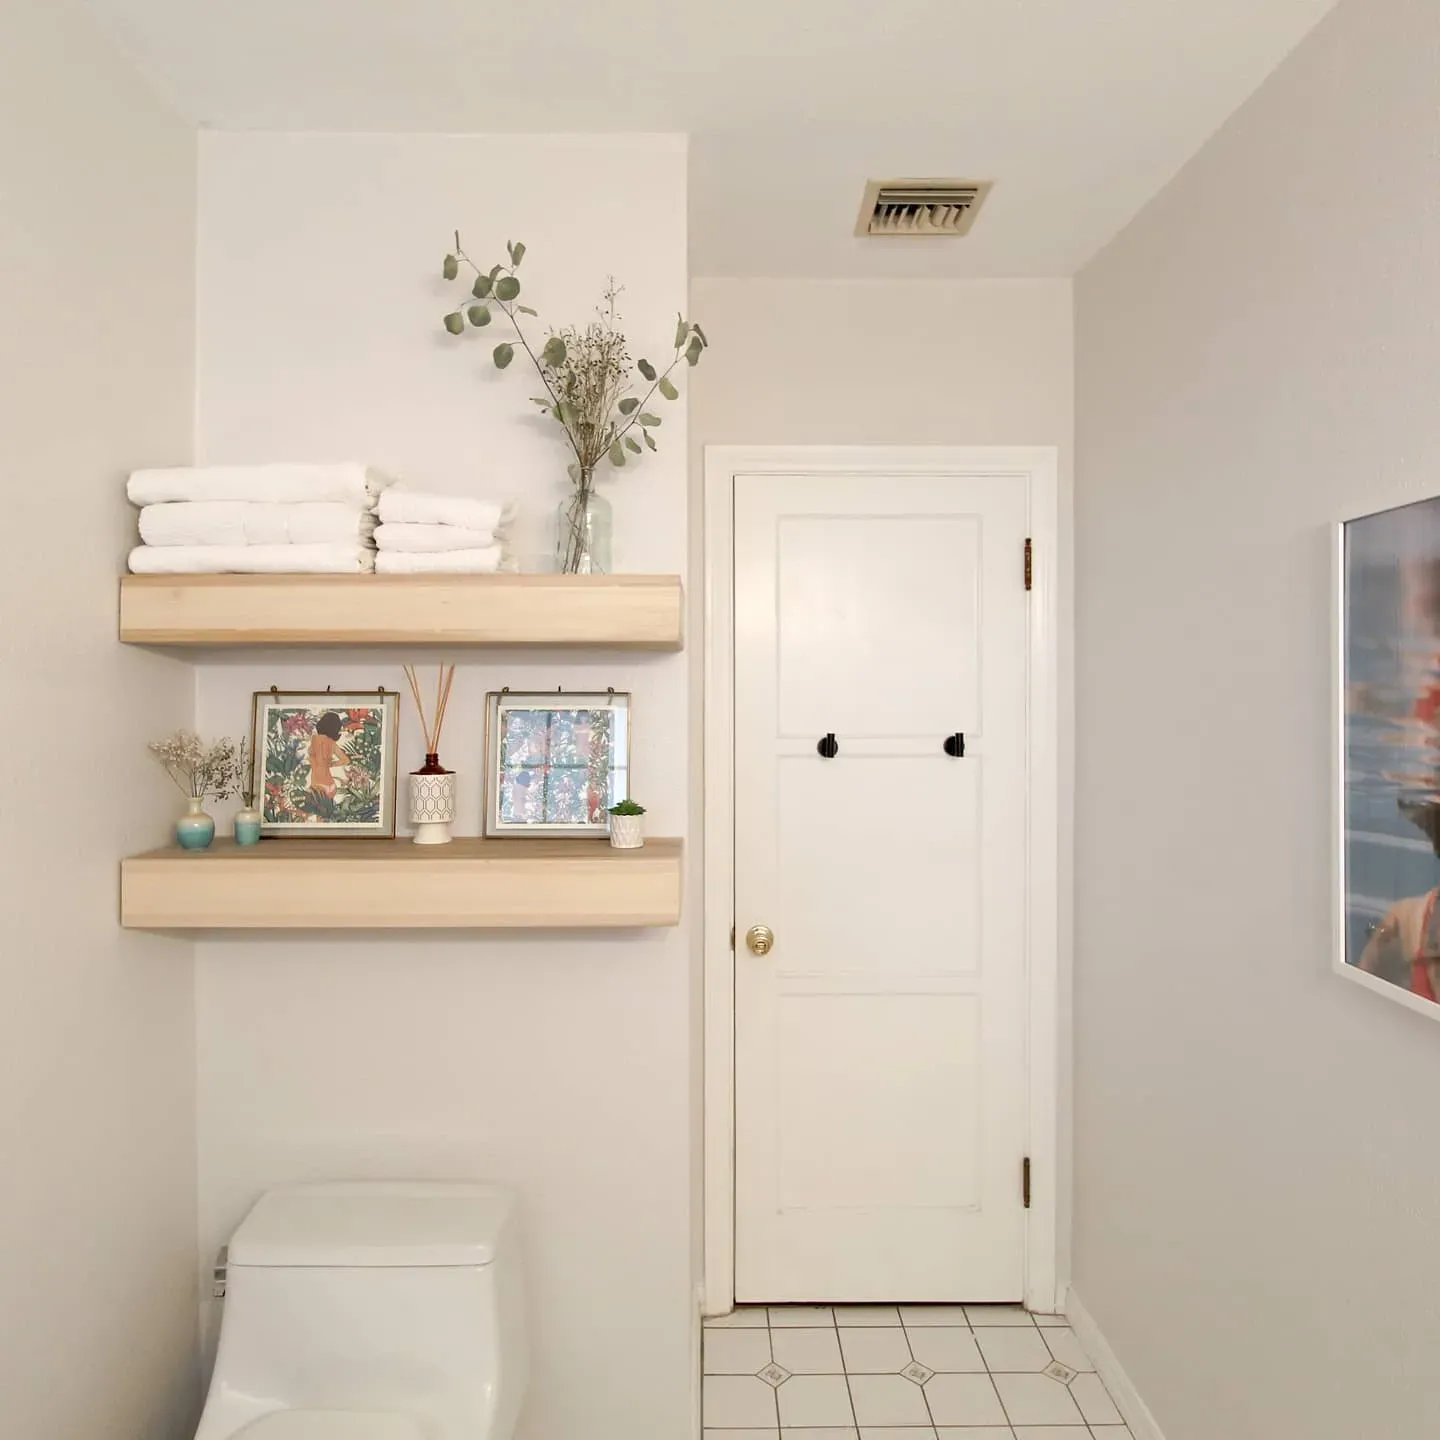 Behr Painter'S White bathroom interior